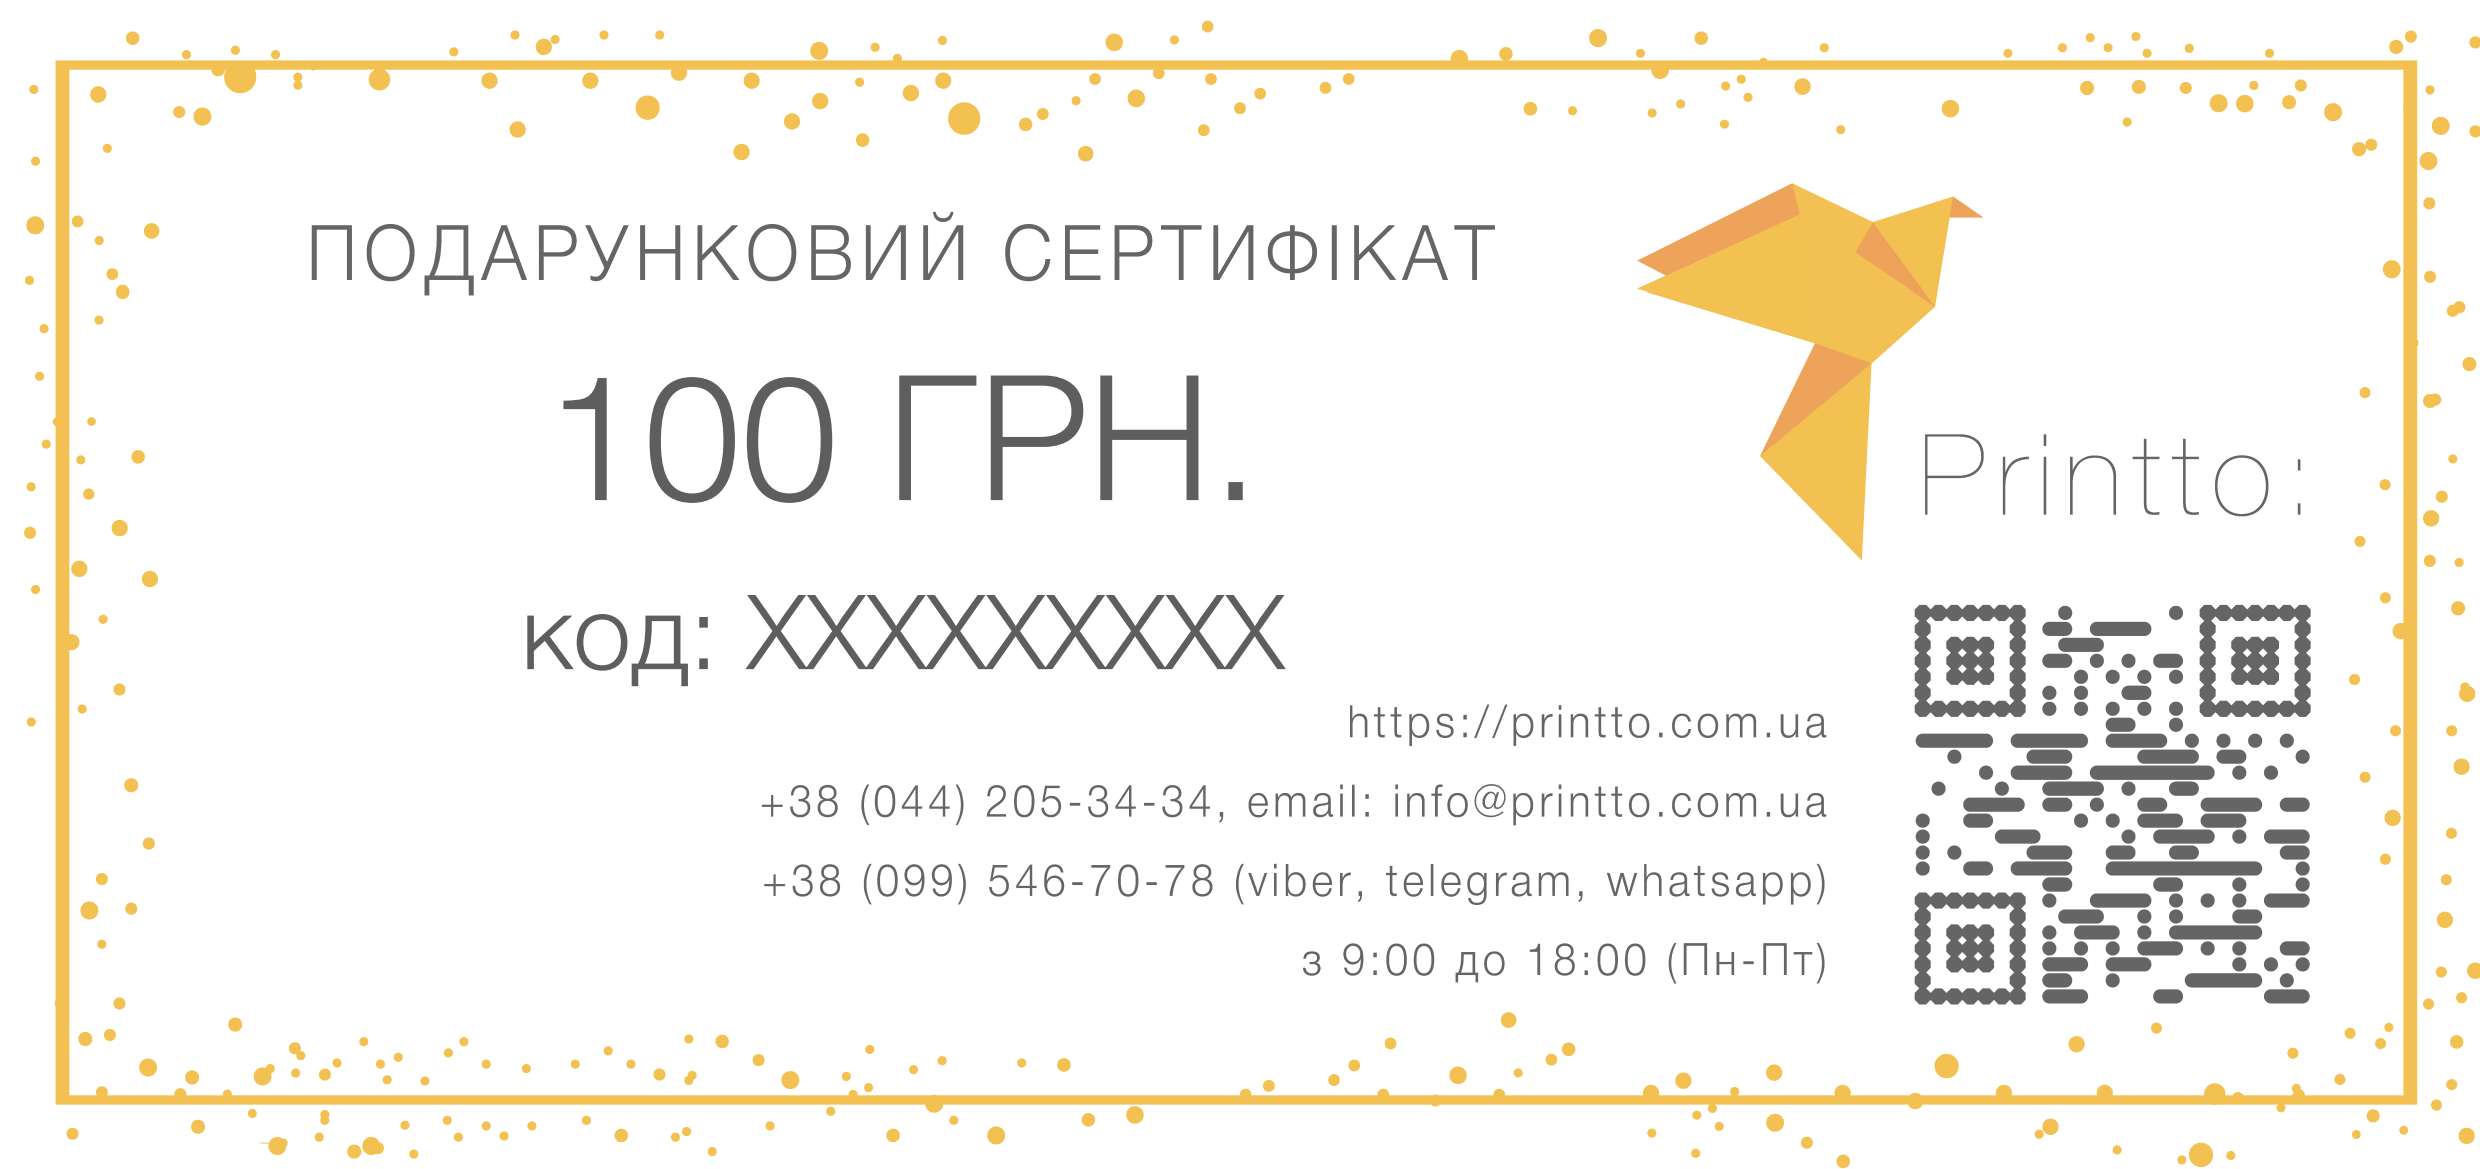 Подарунковий сертифікат на 100 грн. | PrintTo: